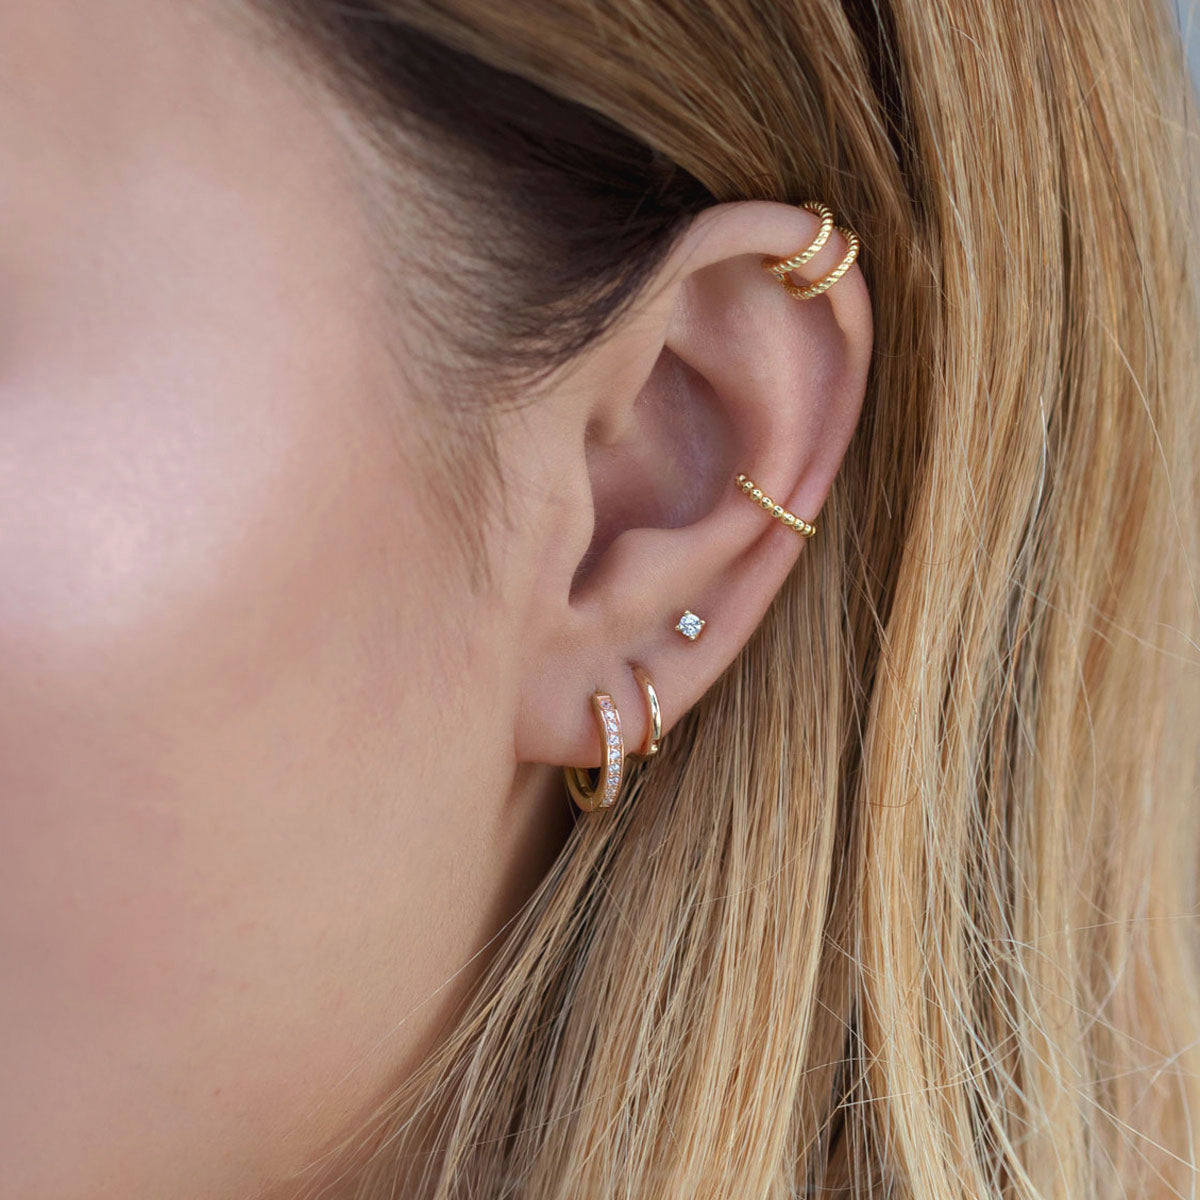 Beaded Ear Cuff Cartilage Hoop Earrings